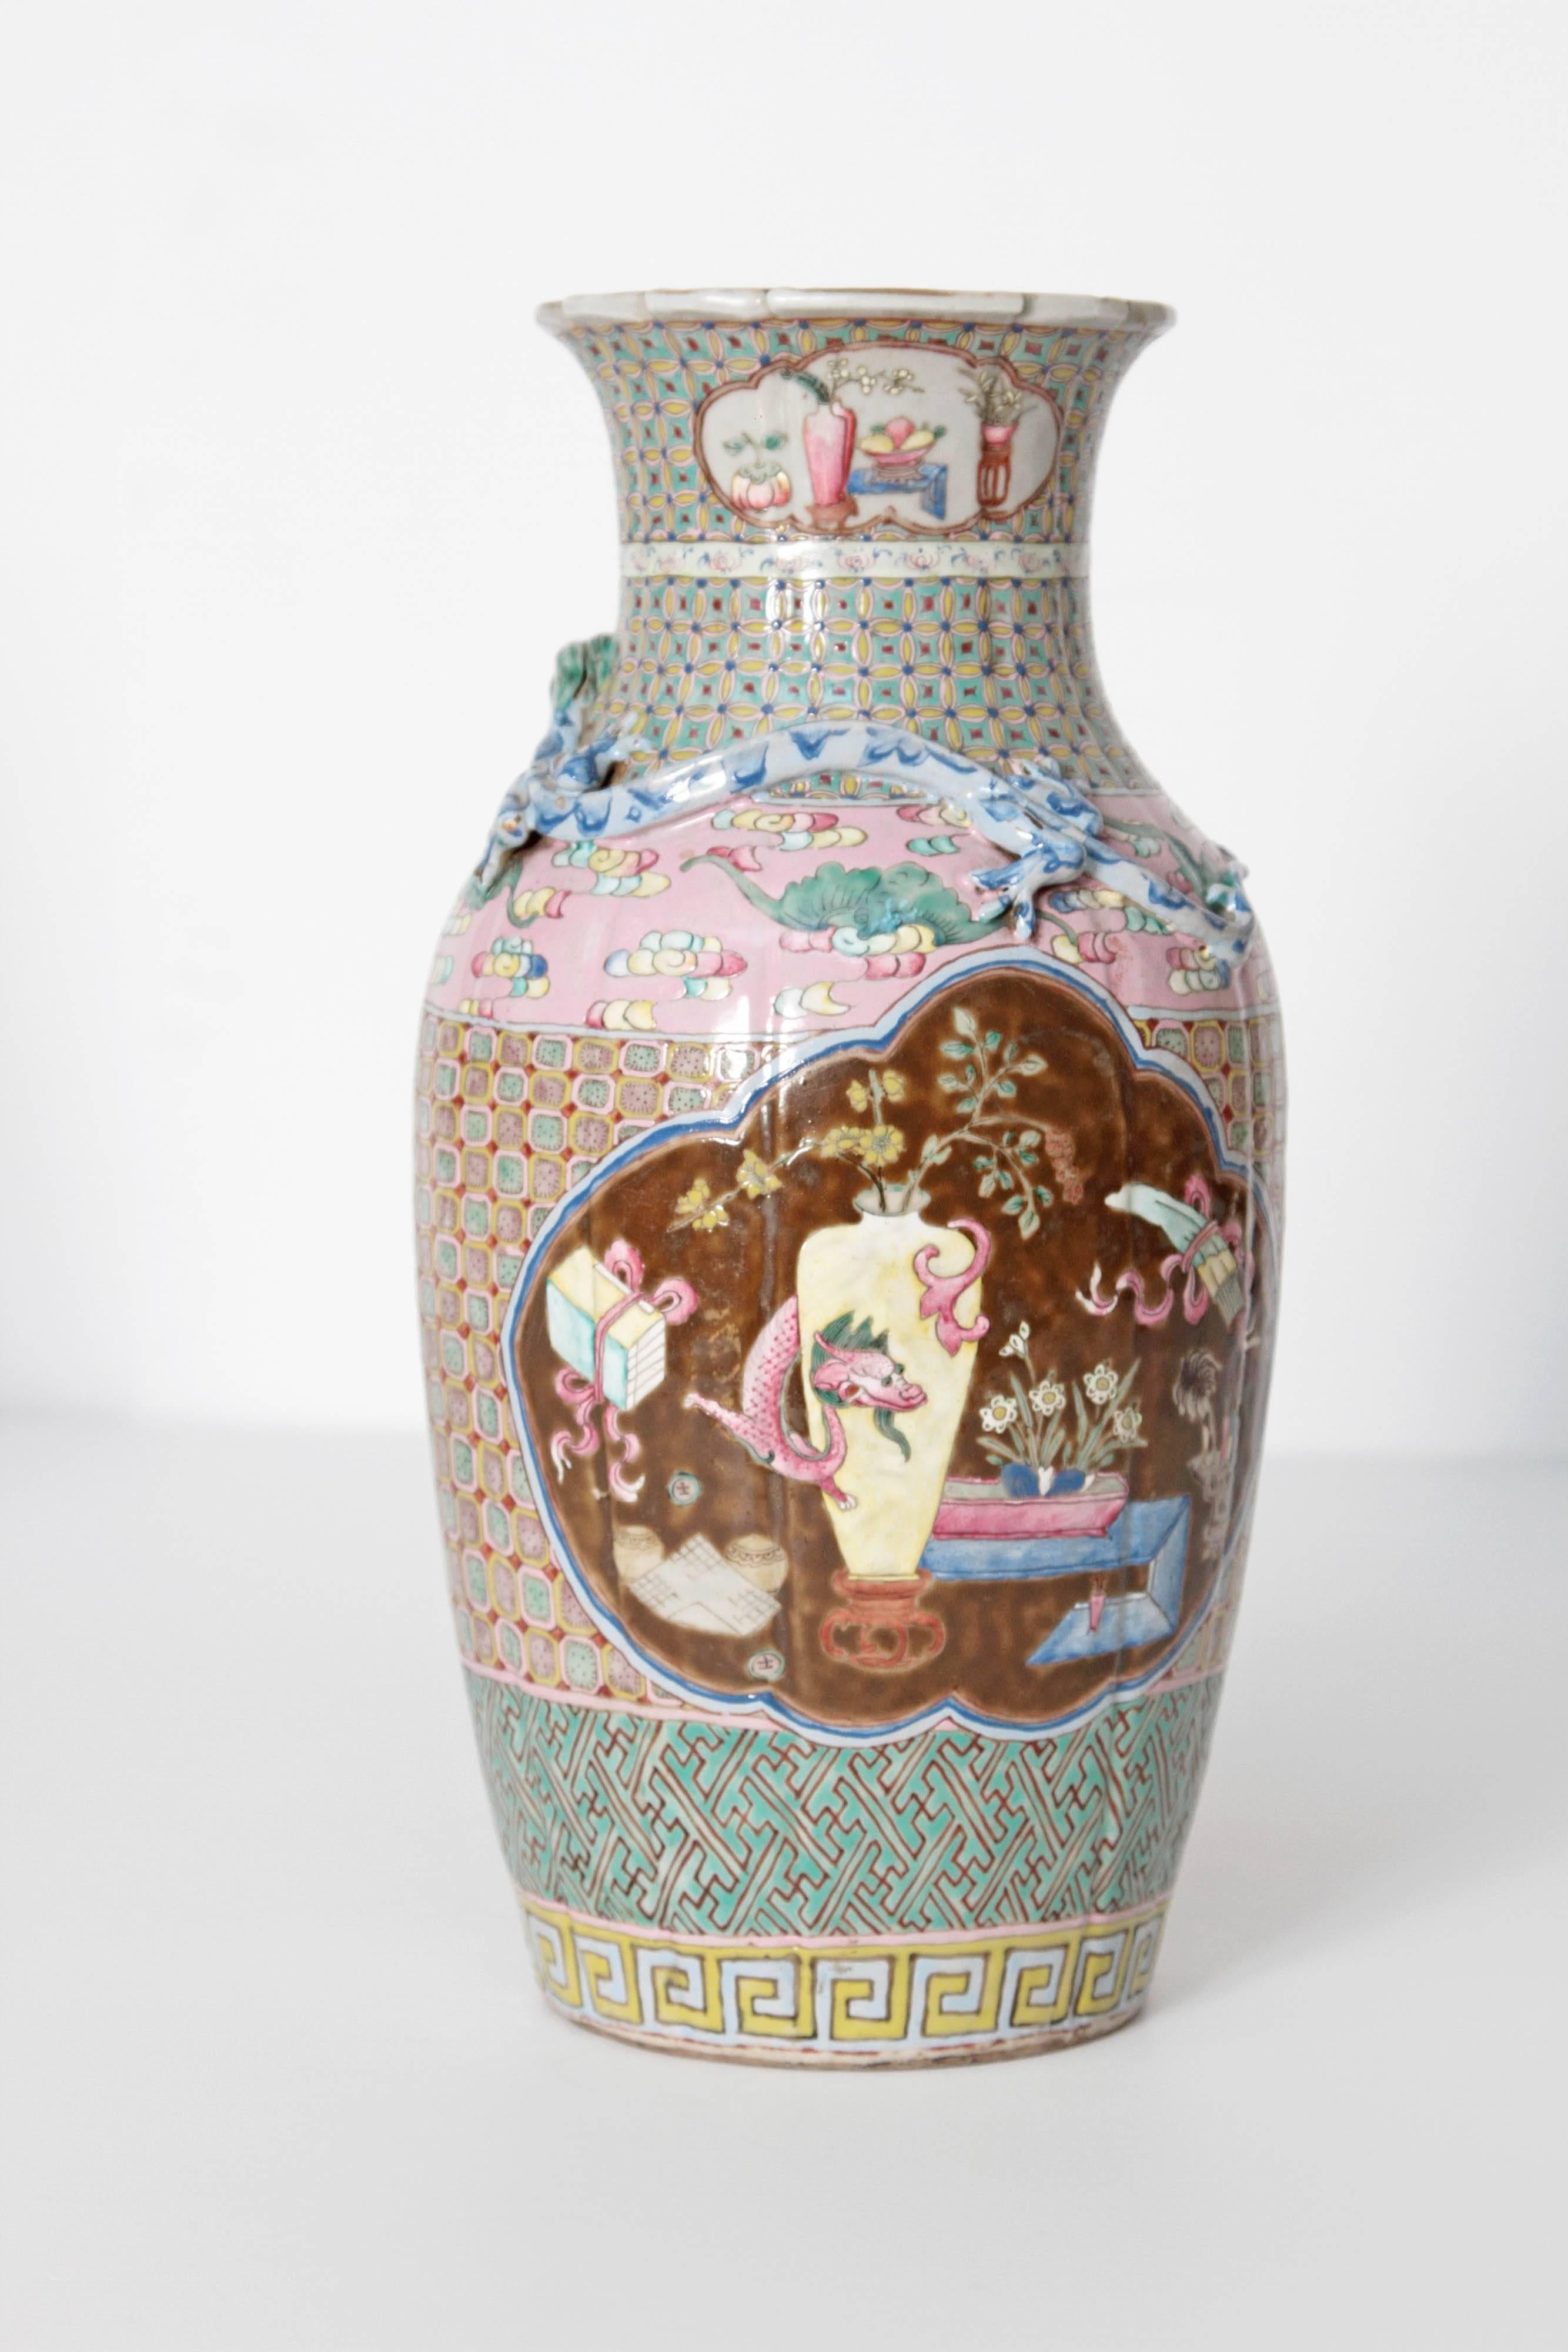 19th Century Pair of Chinese Vases (19. Jahrhundert)